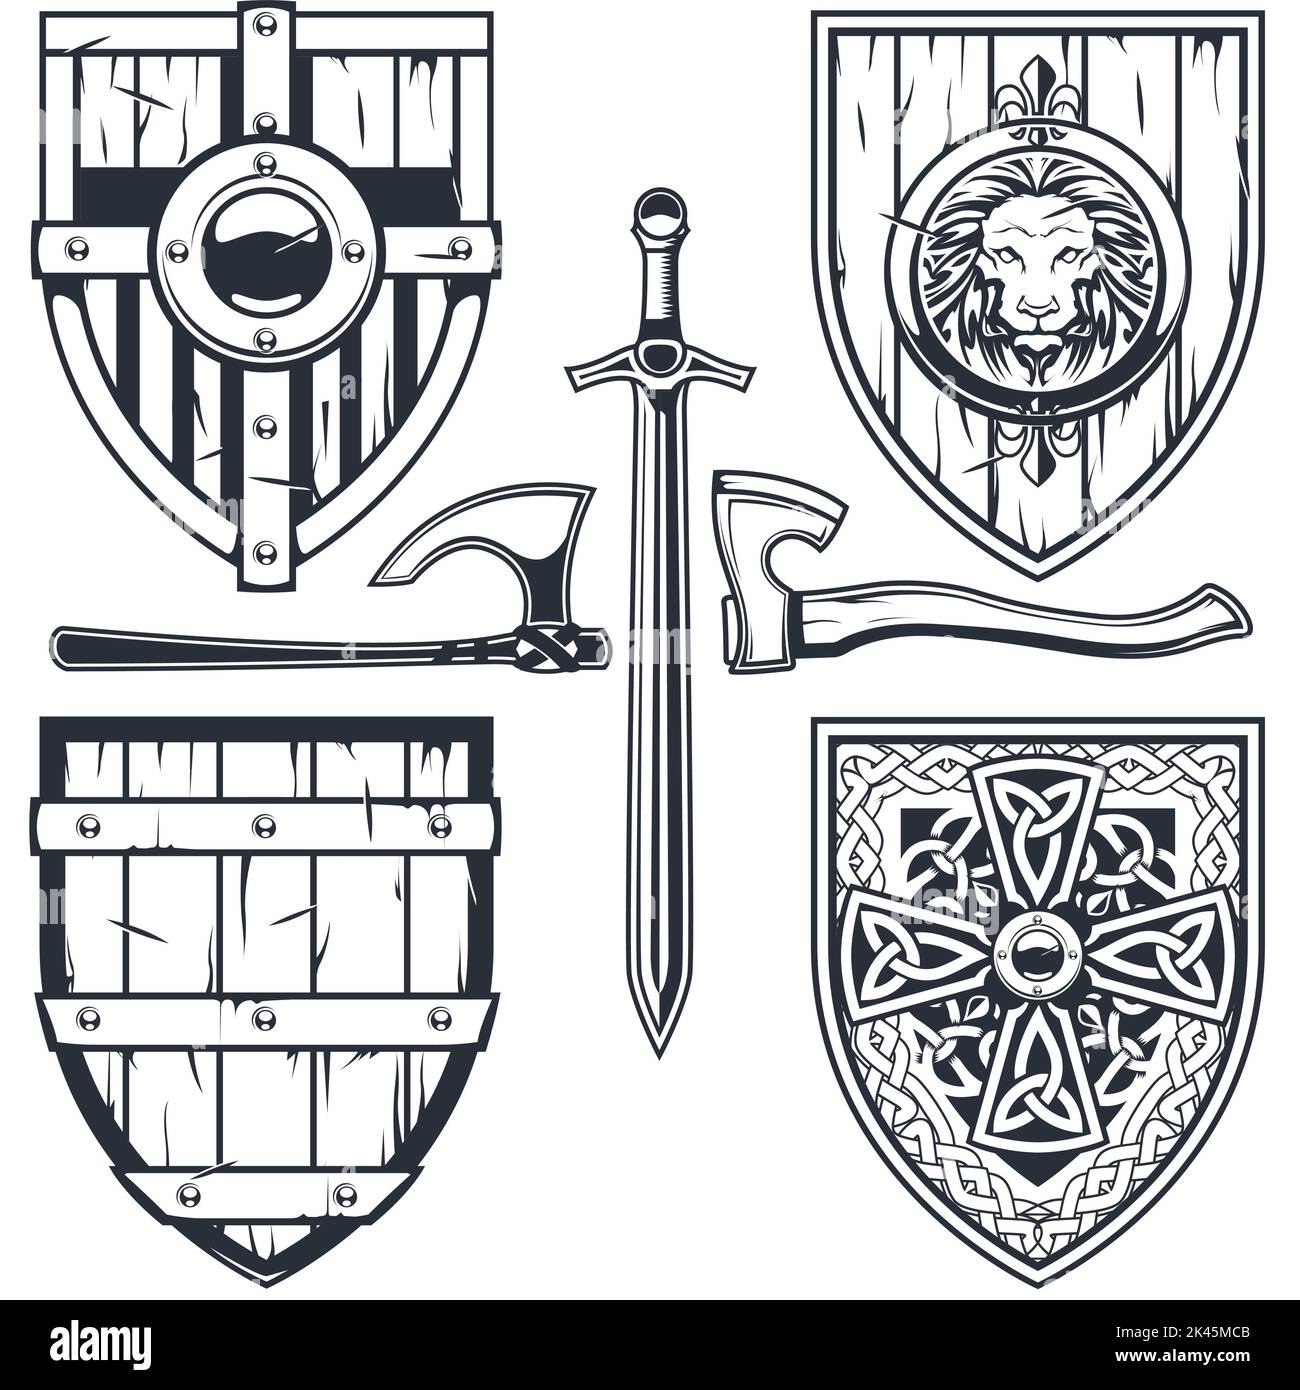 Set aus mittelalterlichen Schilden mit keltischen Mustern und Ornamenten, Ritterrüstung, Ritterschilden, Vektor Stock Vektor